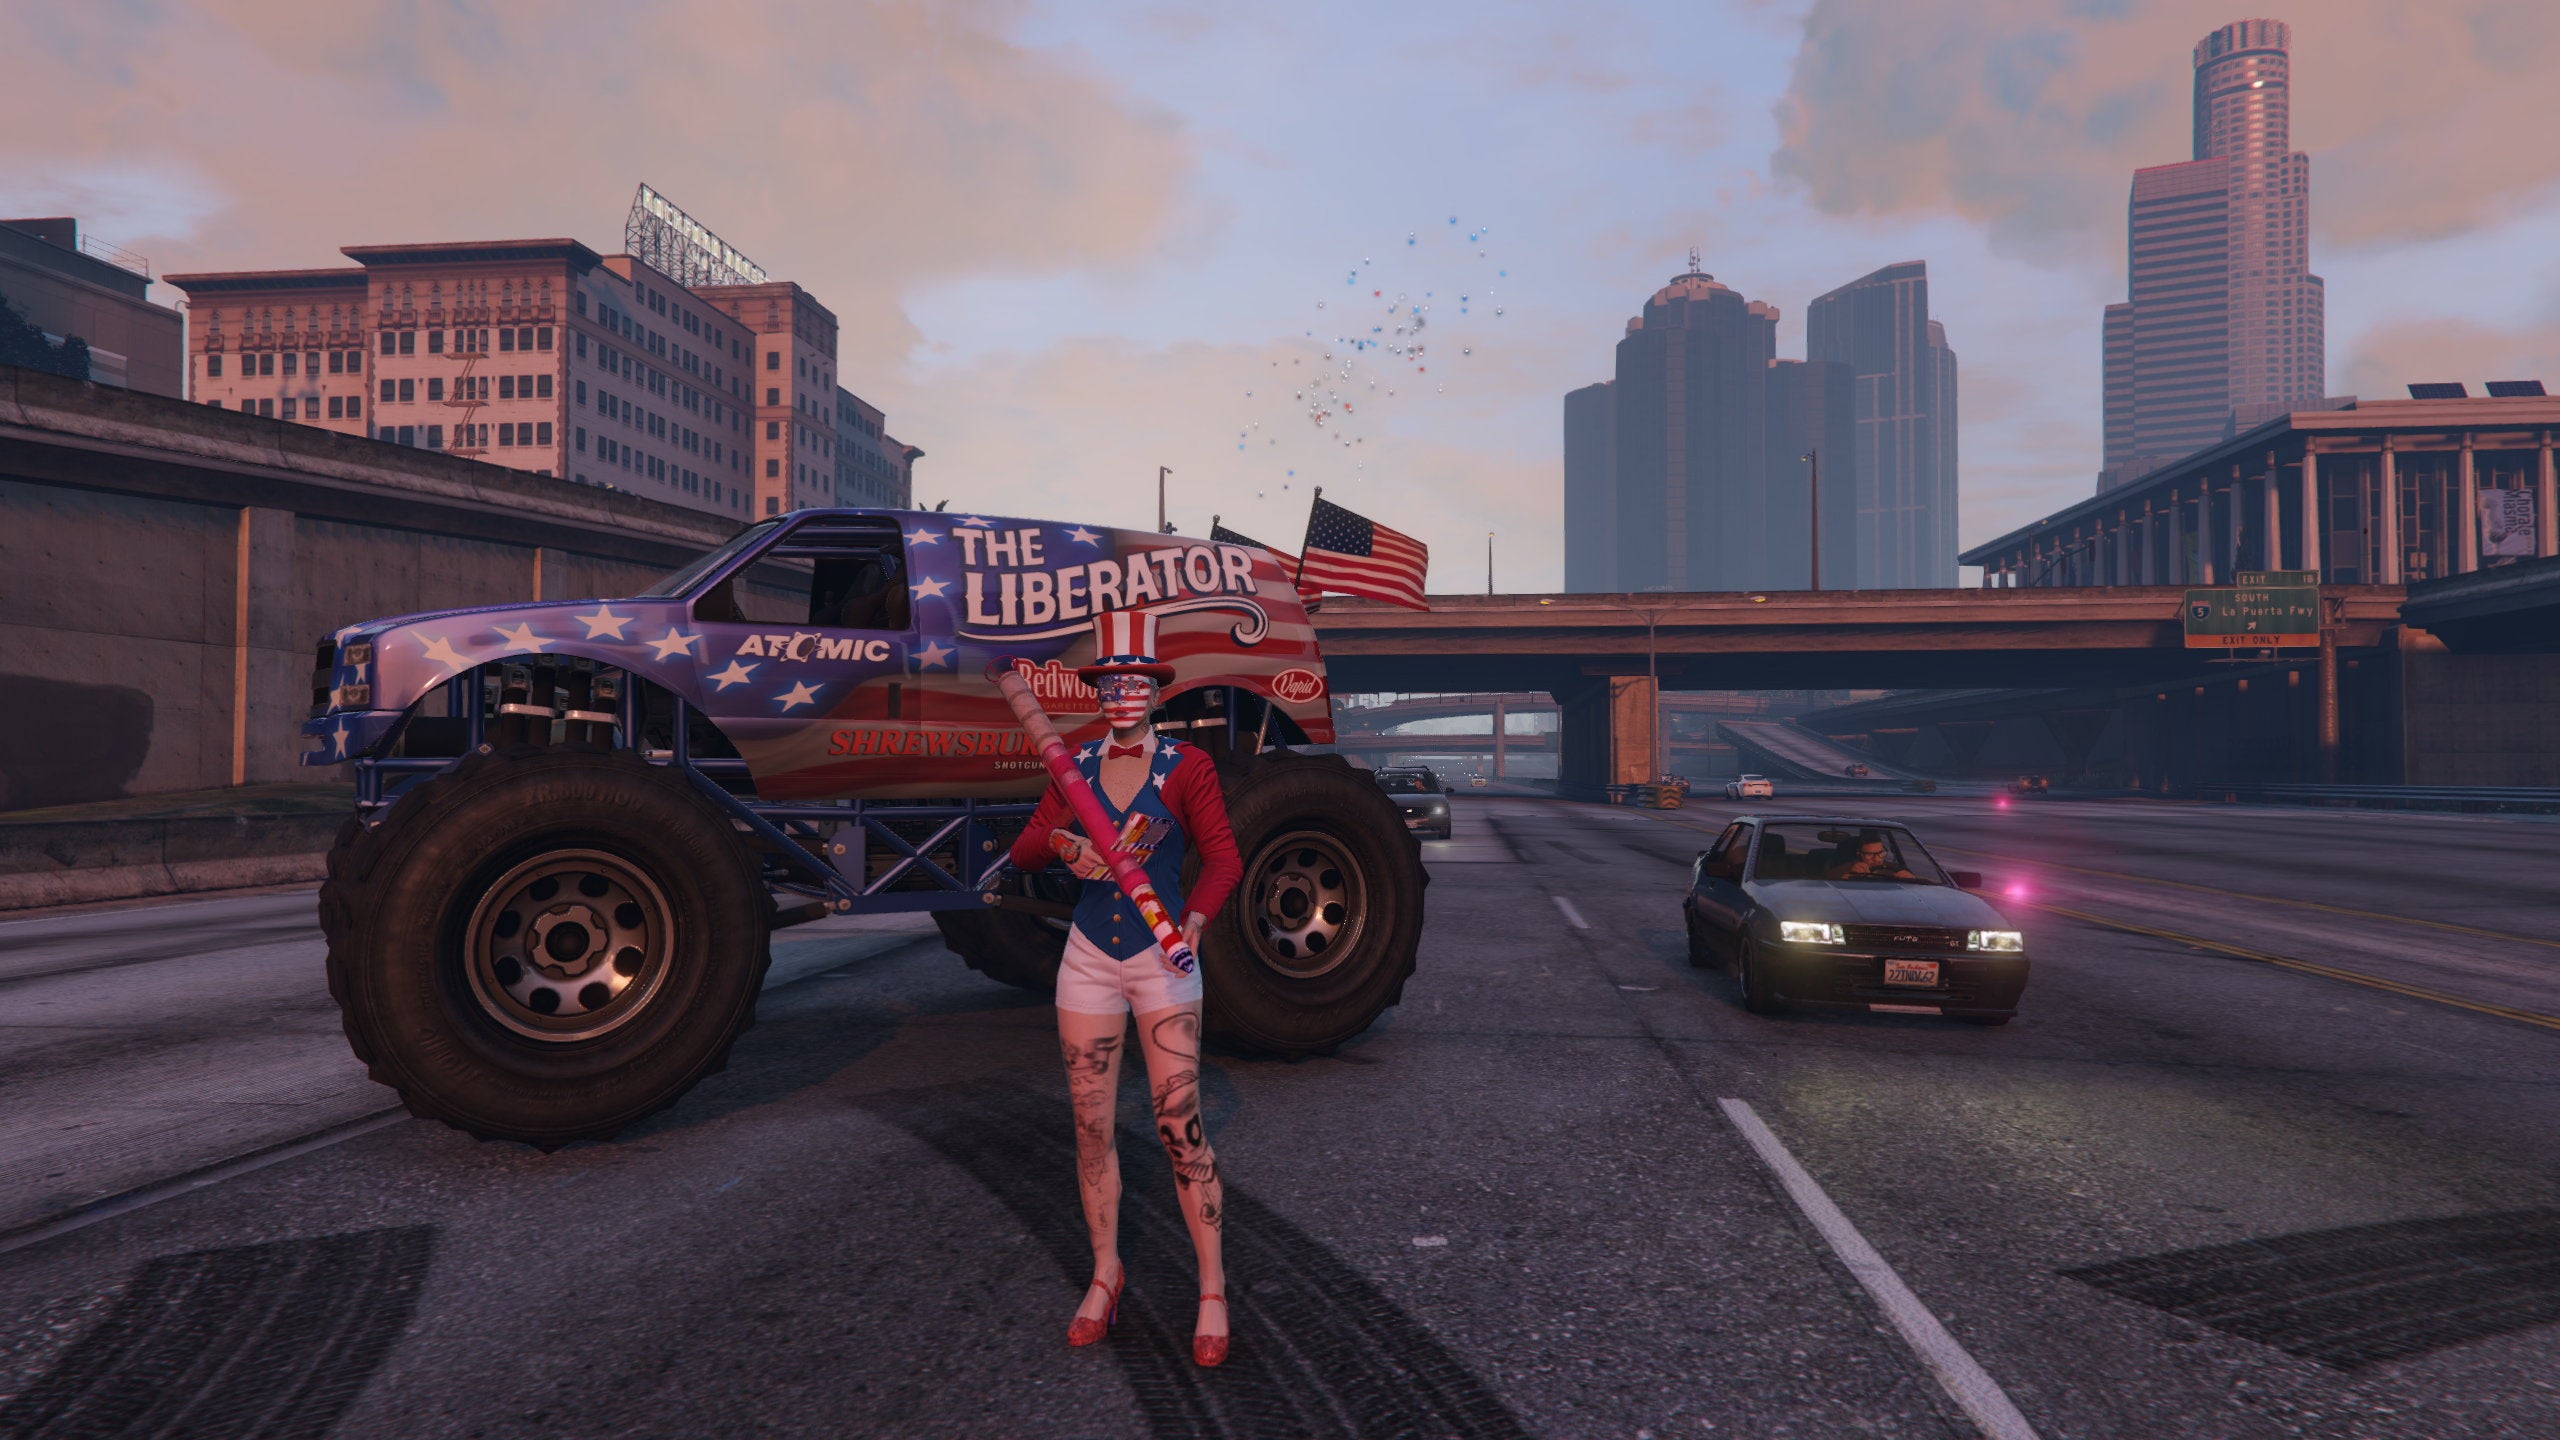 Uma mulher vestida com um traje patriótico americano segura um baooka de fogos de artifício na frente de um caminhão monstro pintado com as estrelas e listras em uma captura de tela do GTA Online.